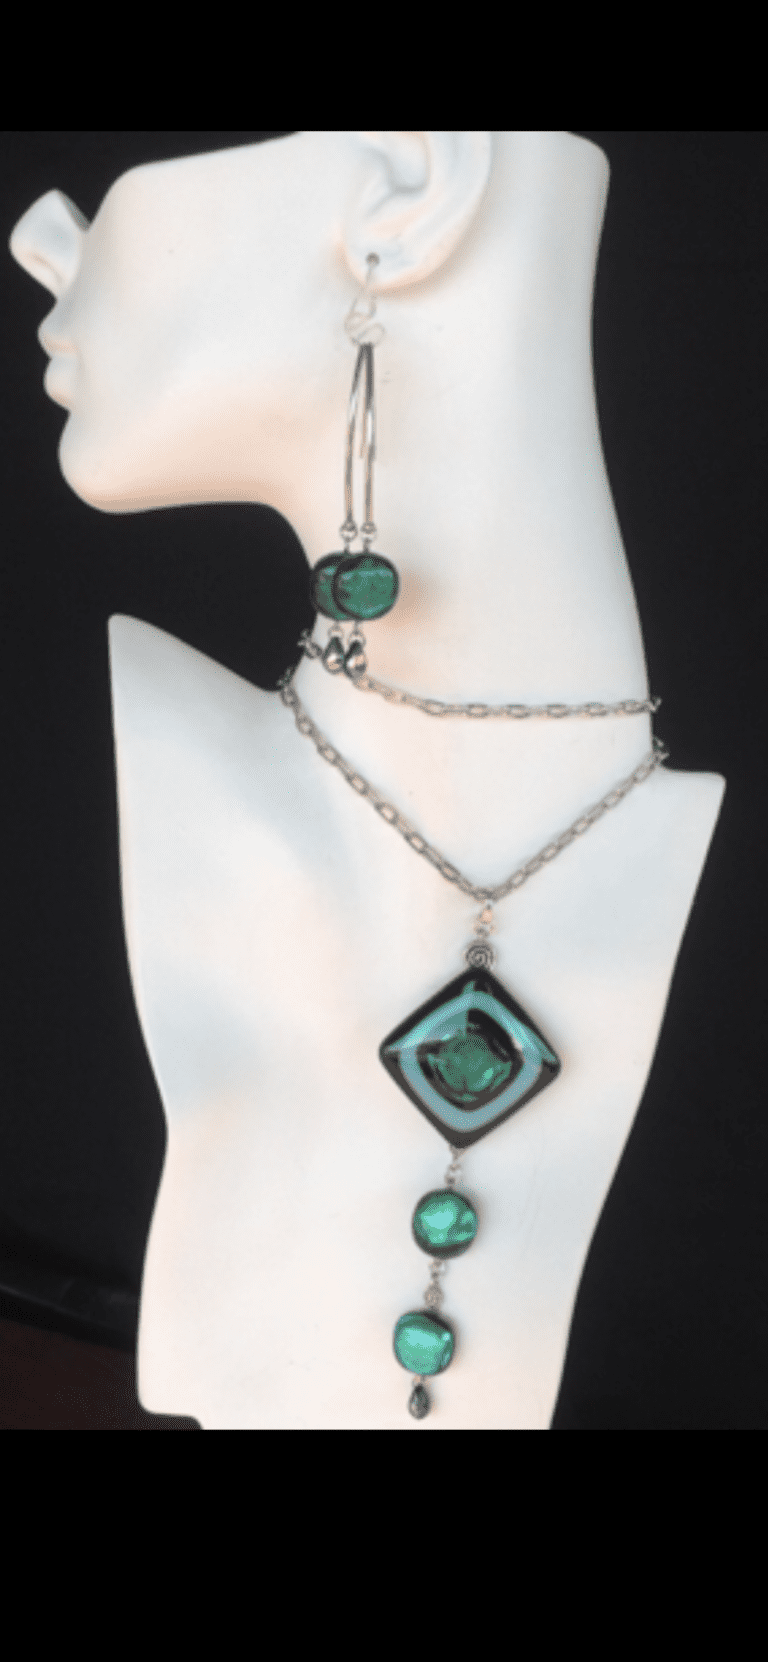 Sally Pray Fused Glass Jewelry